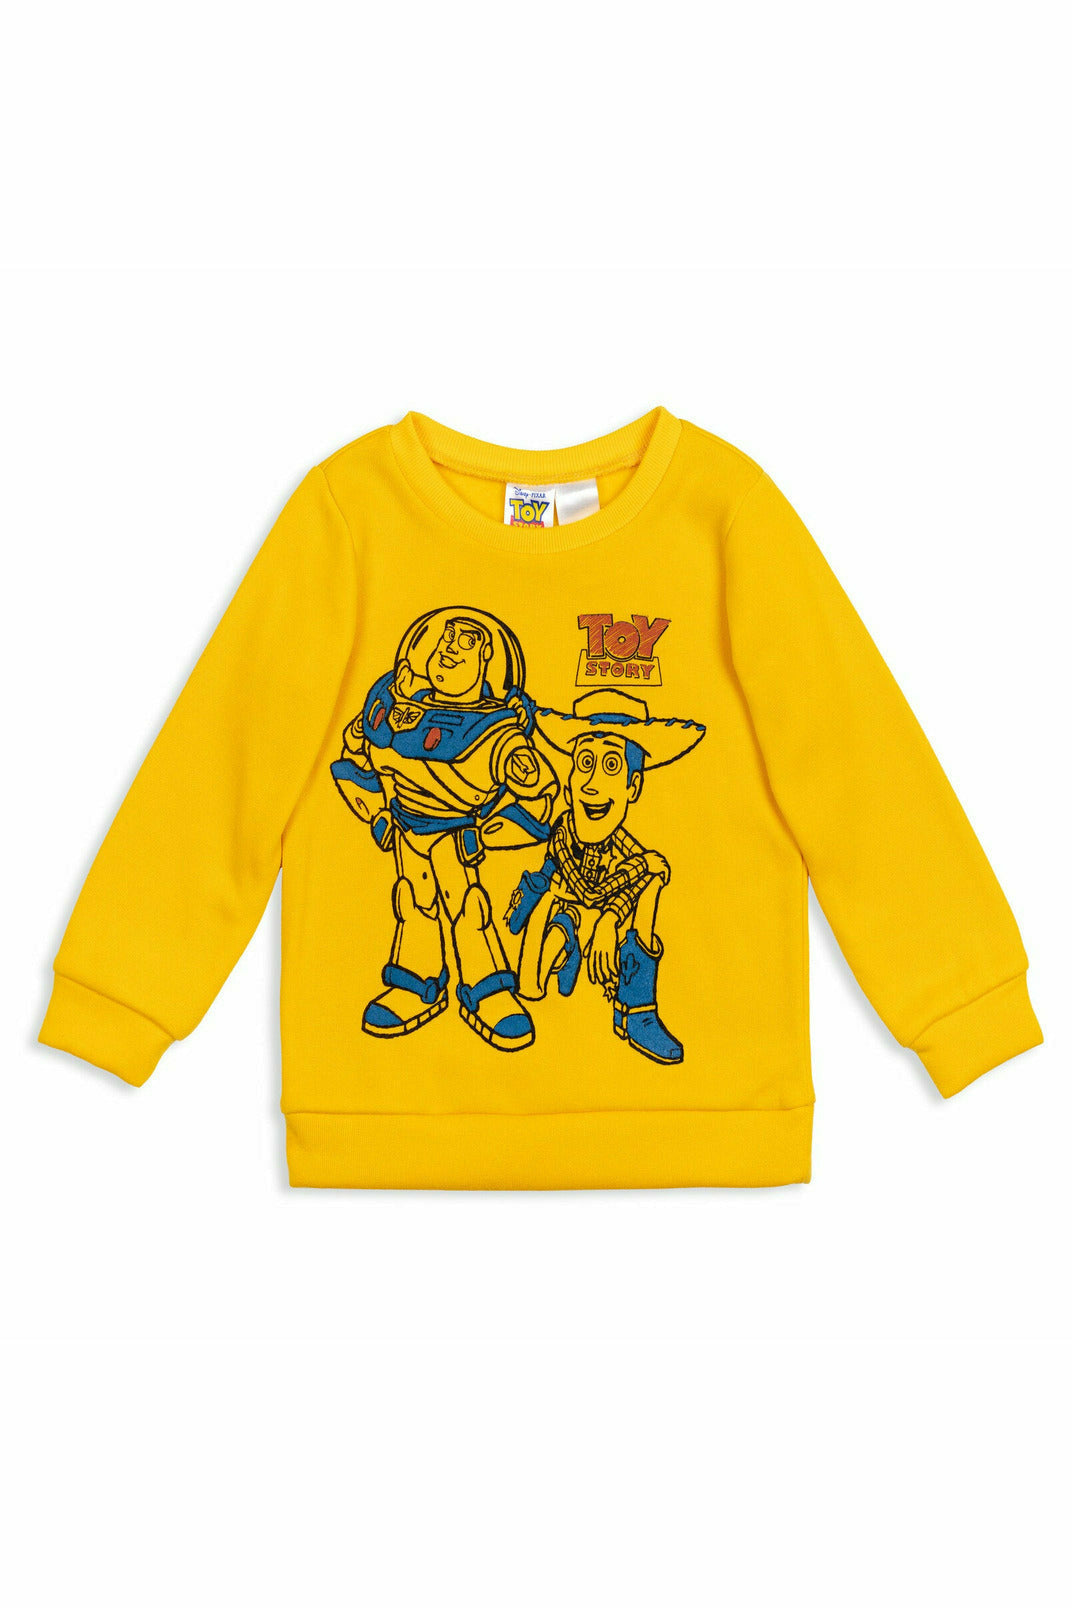 Toy Story Pixar Woody Fleece Pullover Sweatshirt